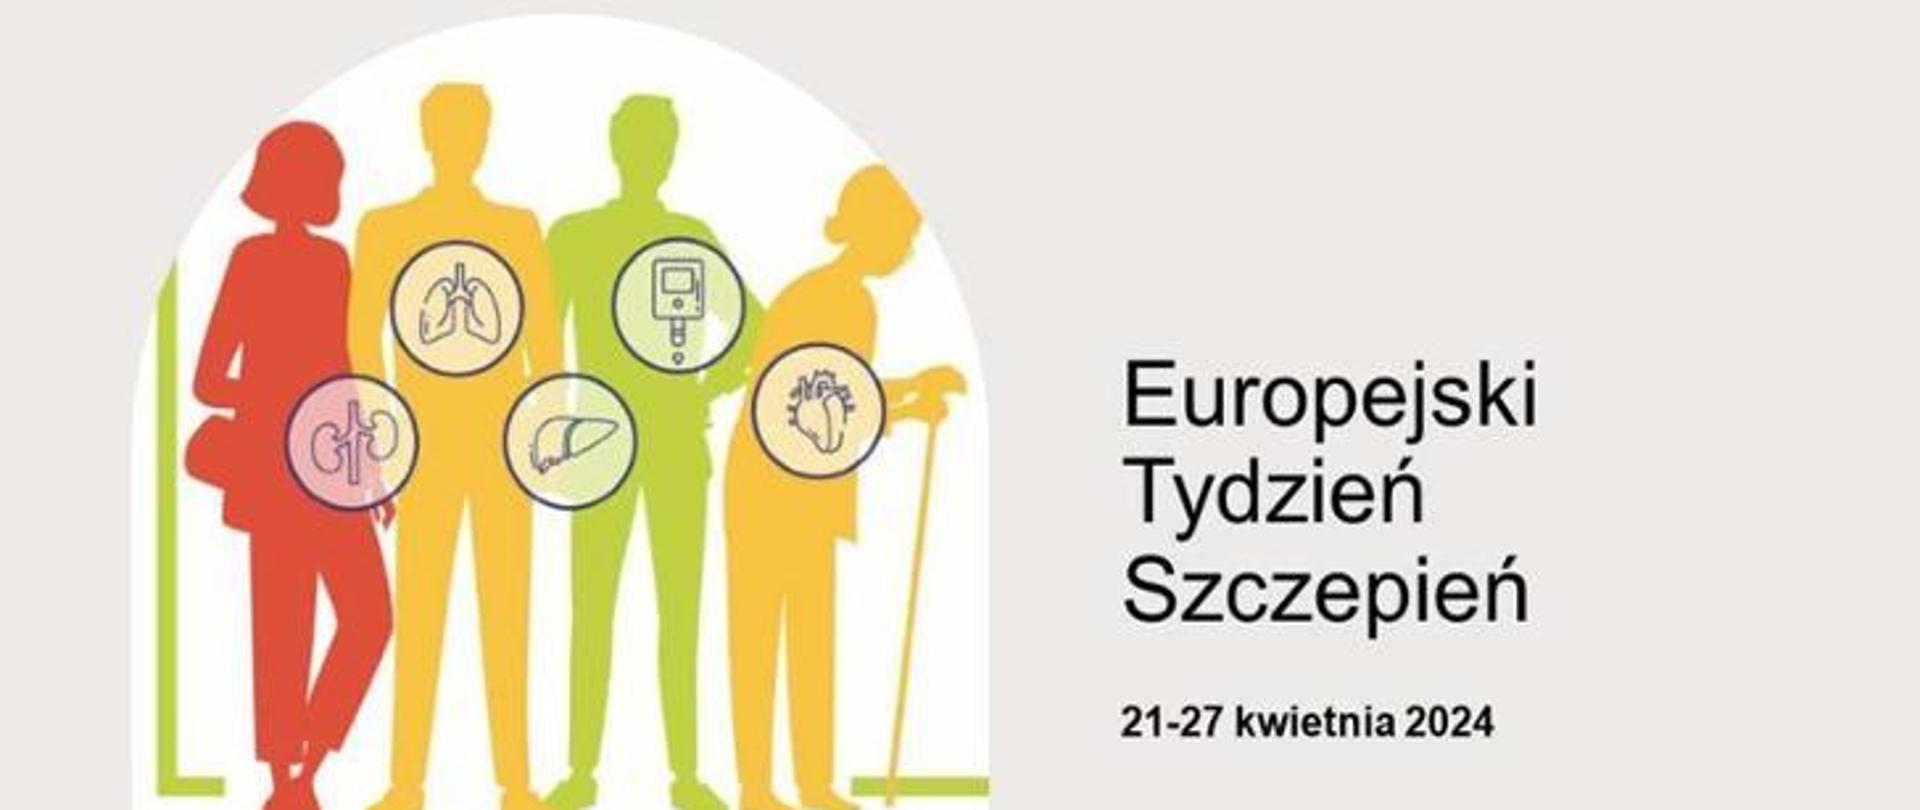 napis - Europejski tydzień szczepień